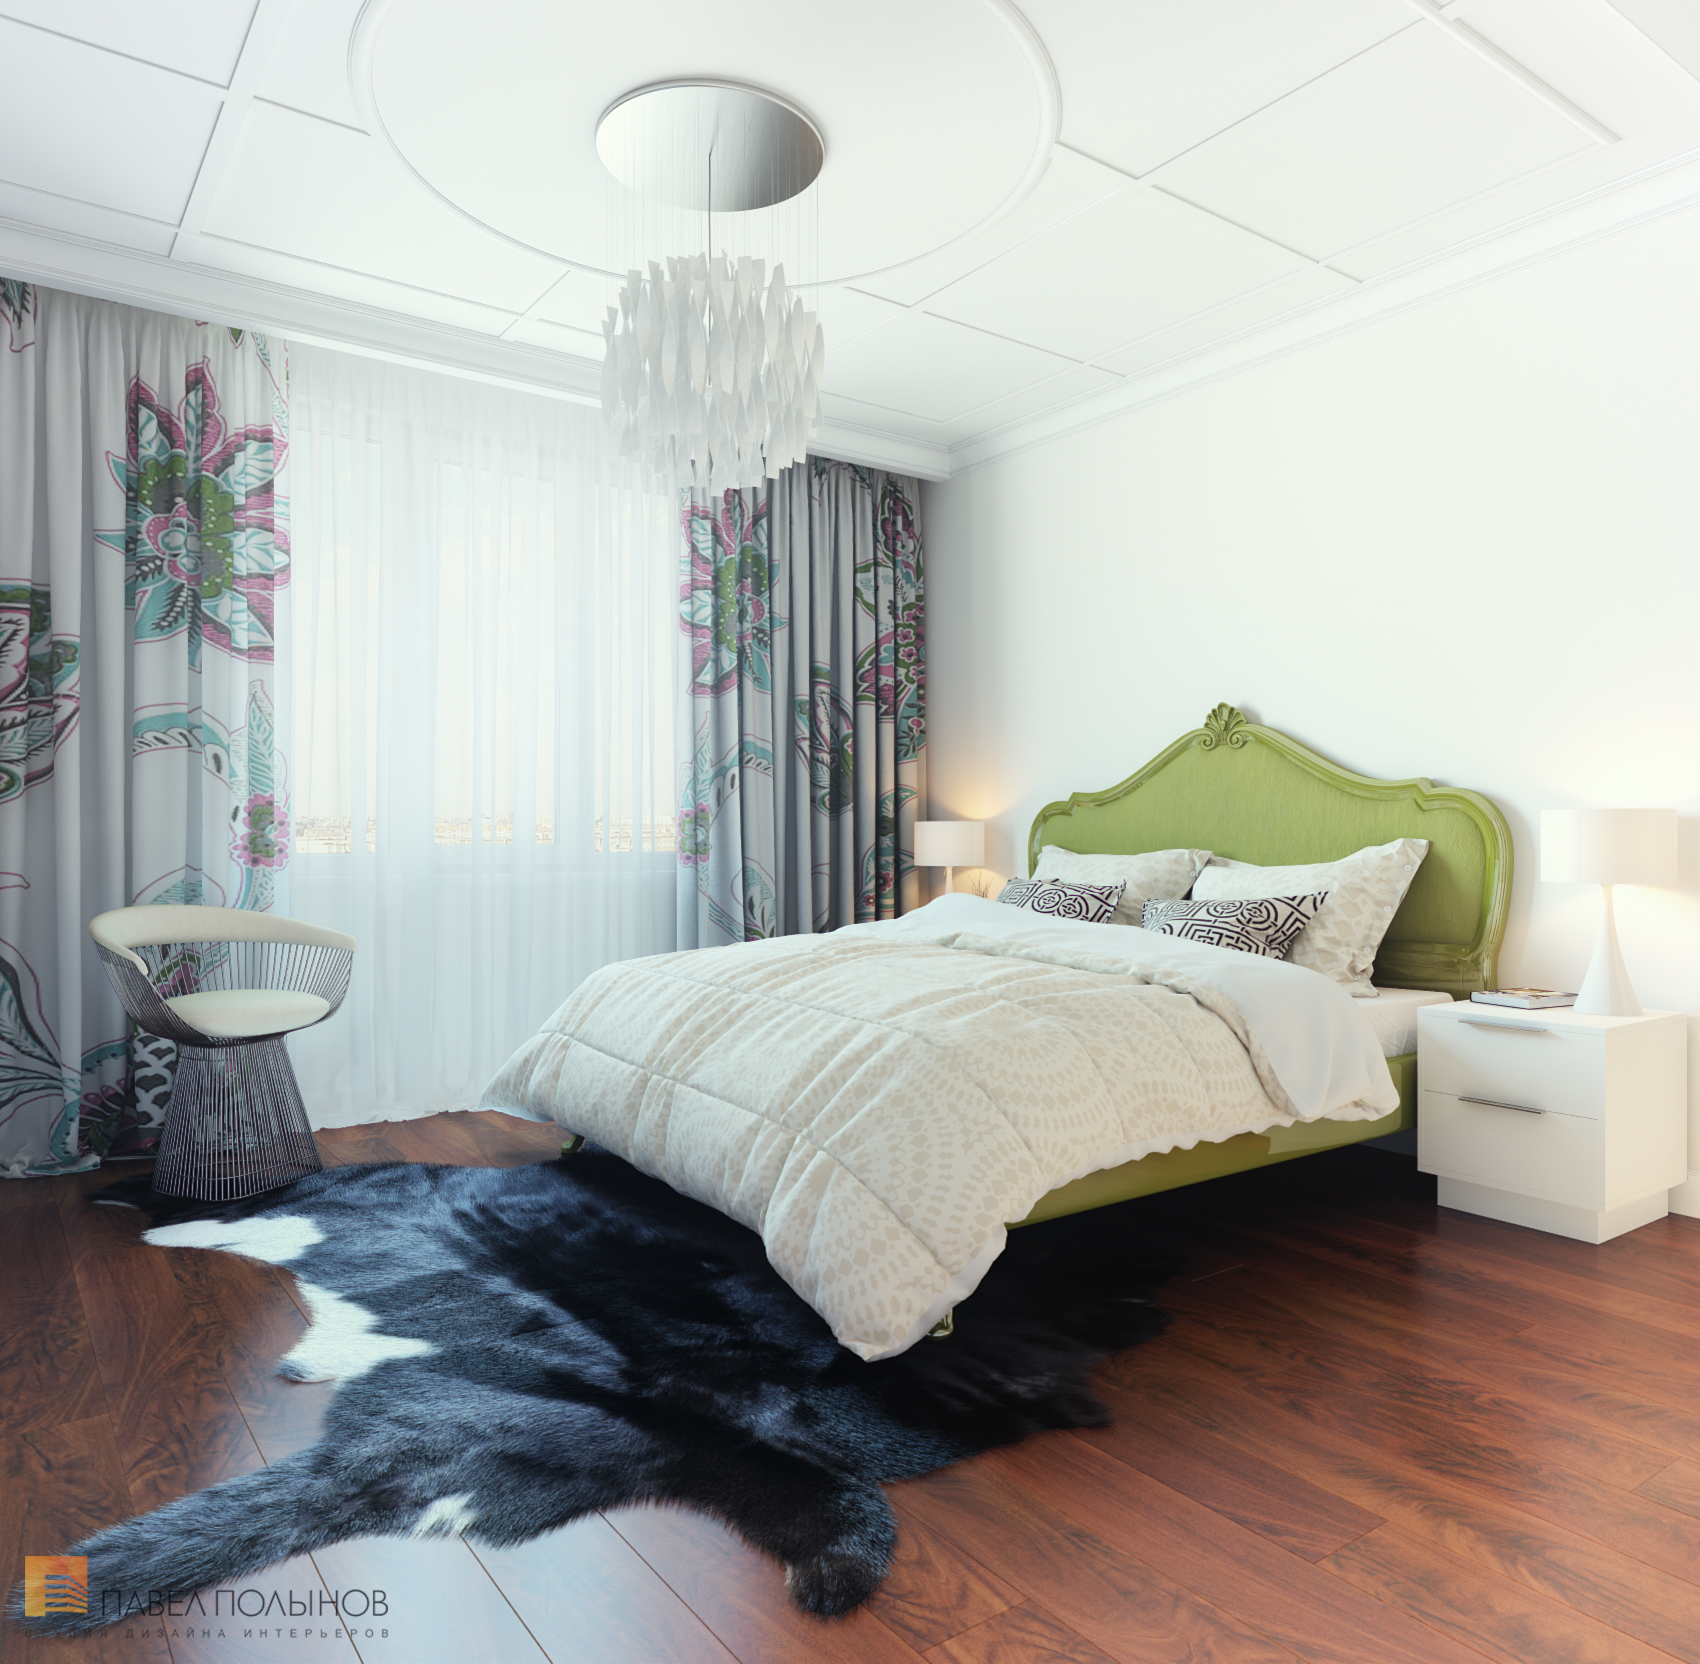 Фото интерьер спальни из проекта «Дизайн интерьера квартиры в ЖК «Ижора Парк»»